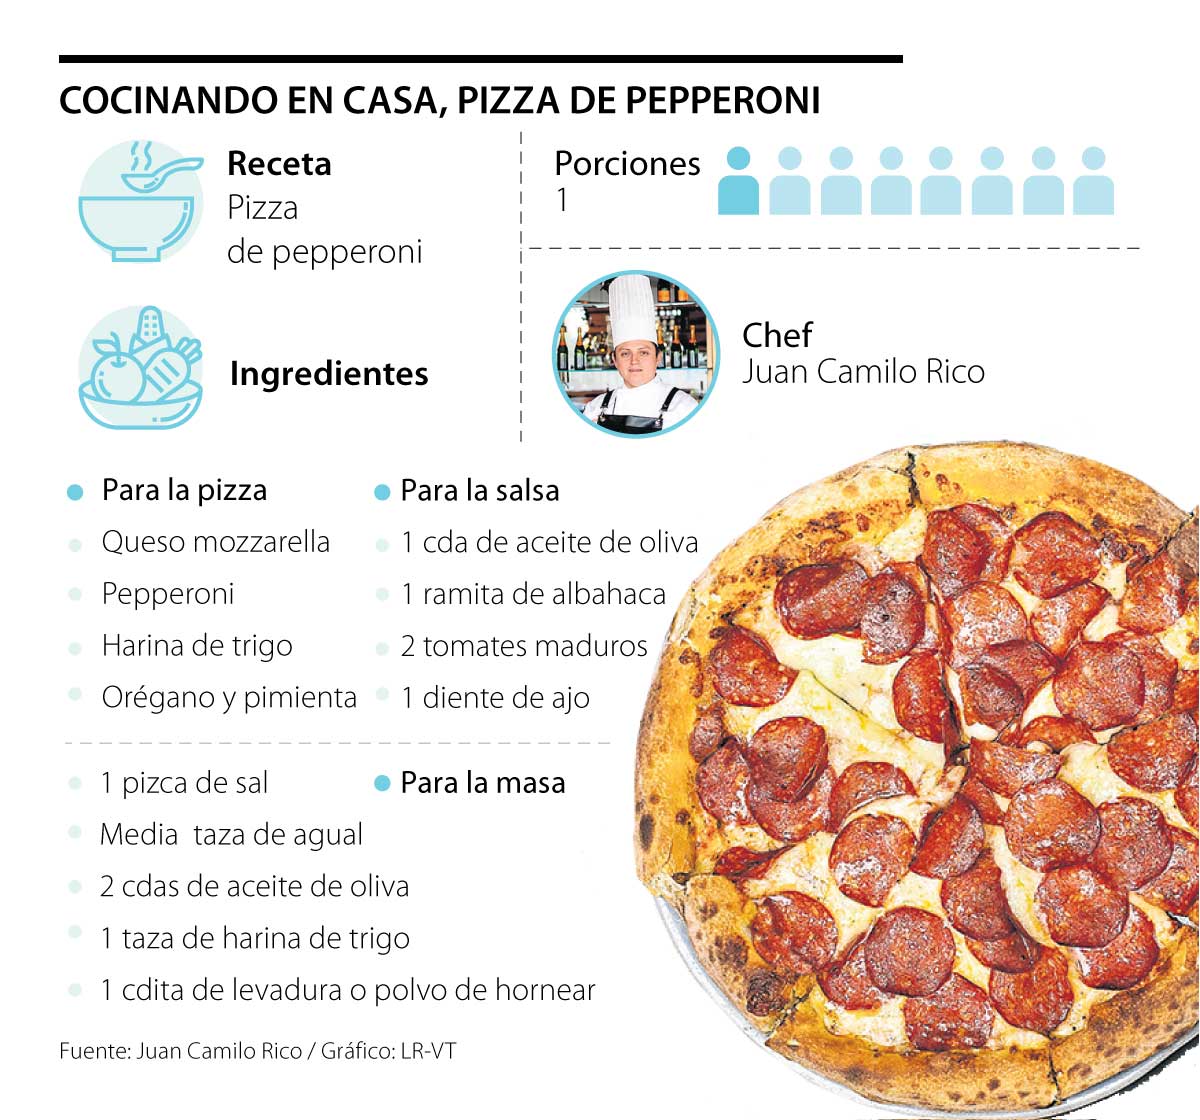 технологическая карта приготовления пиццы пепперони фото 69